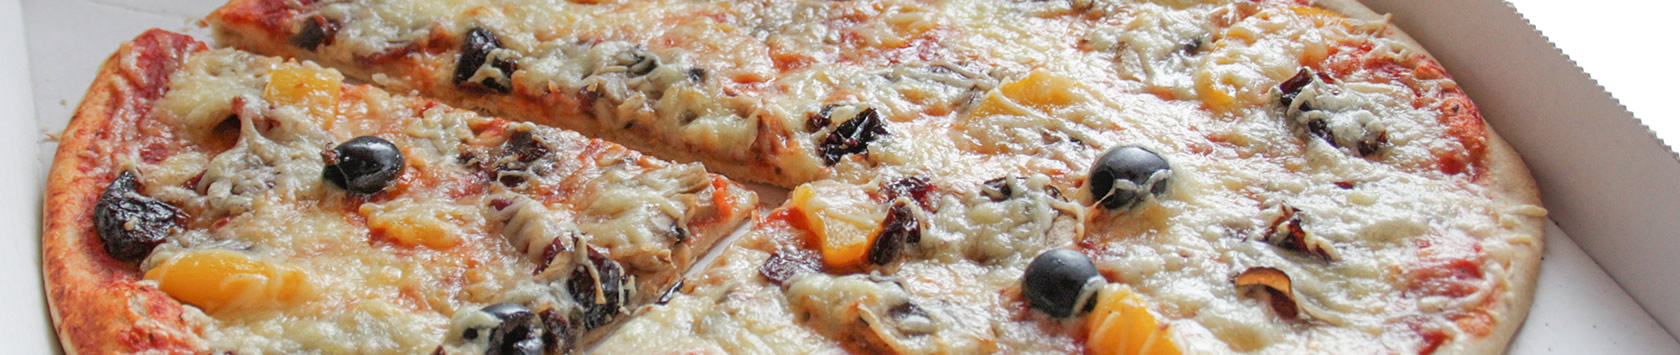  Sud pizza : pizza à emporter-au passage près d'Agen